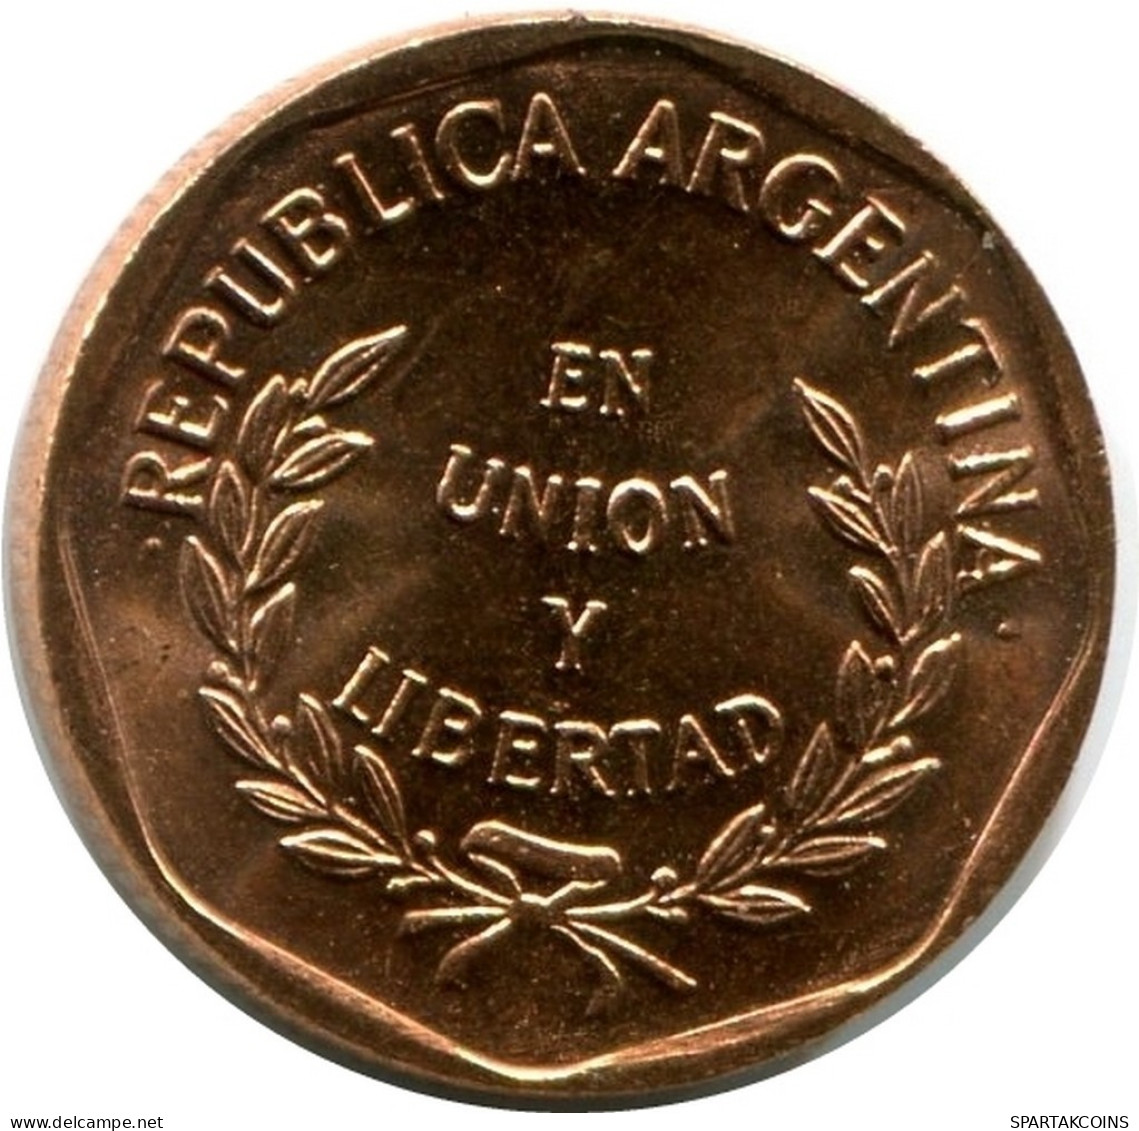 1 CENTAVO 1998 ARGENTINIEN ARGENTINA Münze UNC #M10066.D.A - Argentina